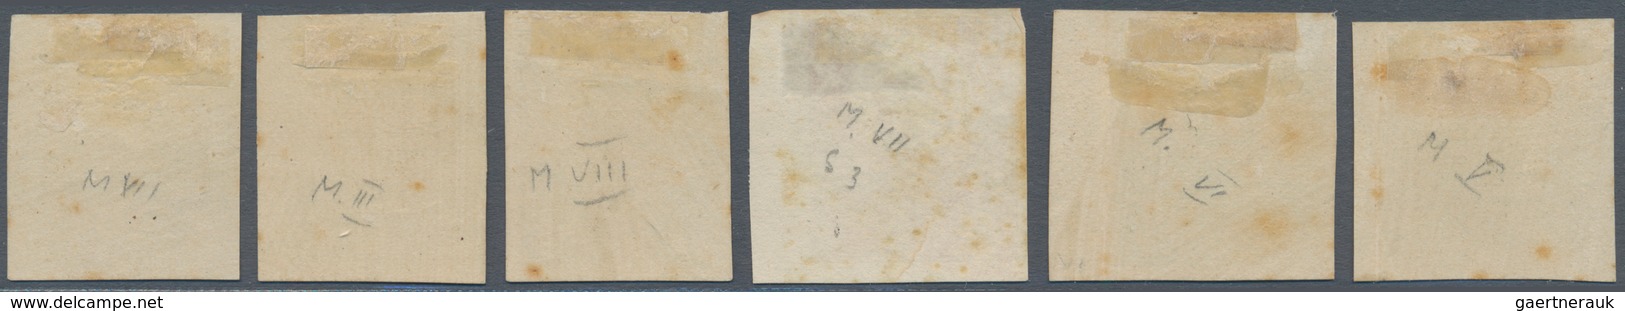 01730 Ungarn: 1871, 2 Kr - 25 Kr Franz-Josef, Lithographed Printing, Complete Imperforated Proof Set, Mint - Briefe U. Dokumente